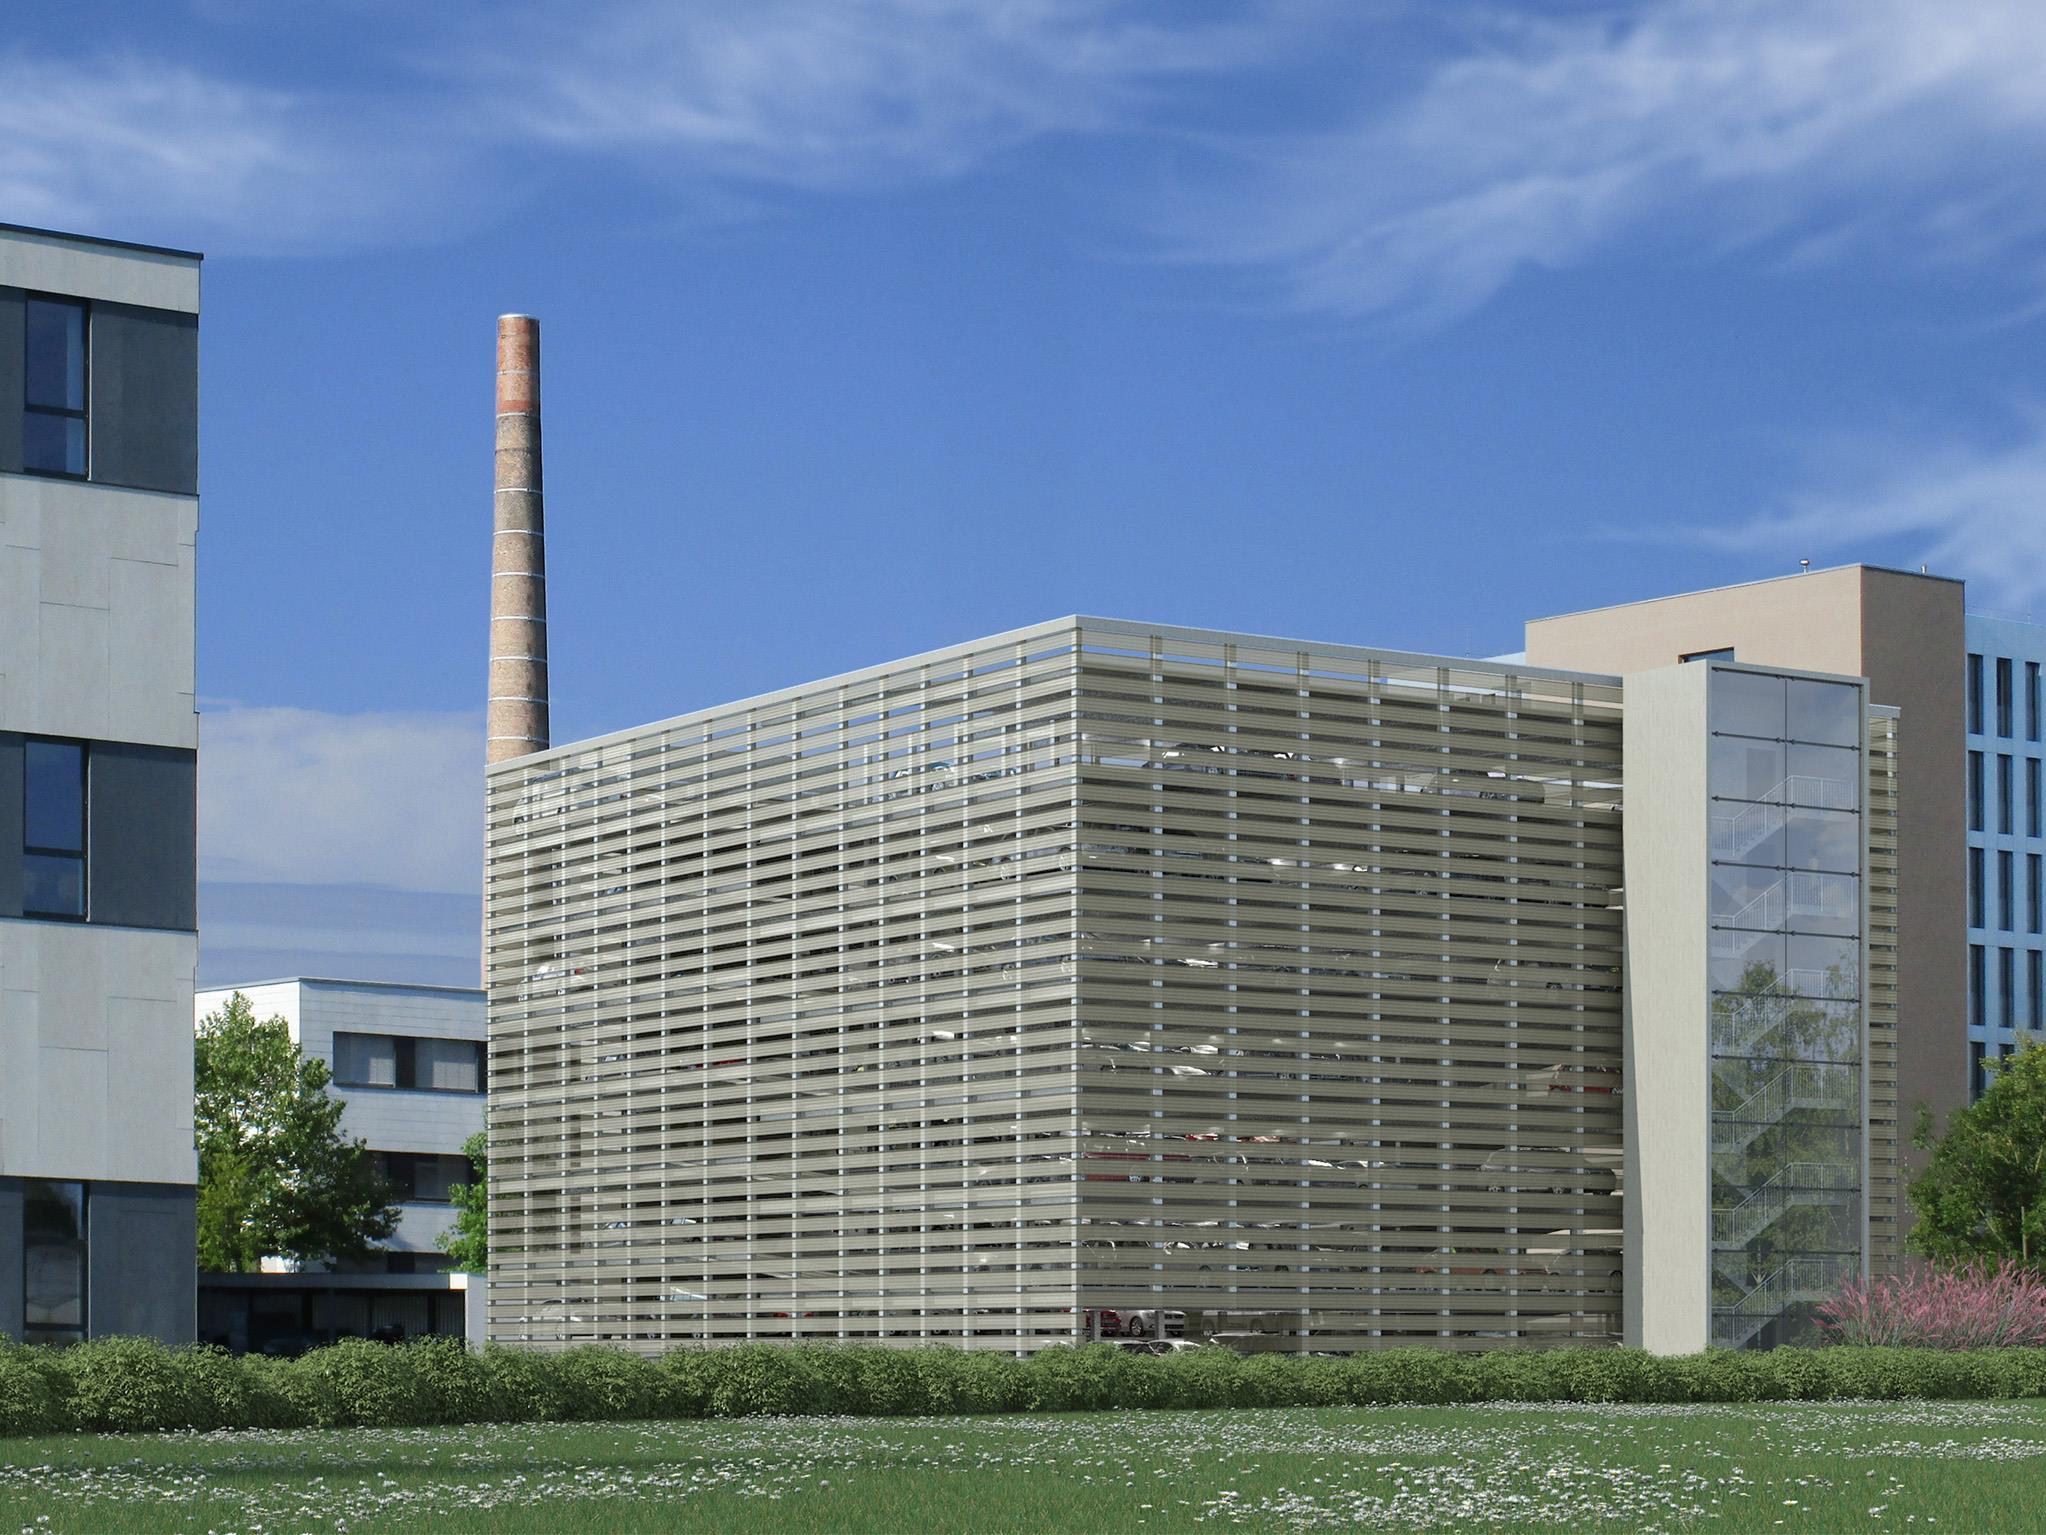 Blick in die Zukunft: Ab Dezember 2014 bietet das Parkhaus (hier eine Visualisierung) 240 neue Stellplätze für die Mieter in Rhomberg's Fabrik.